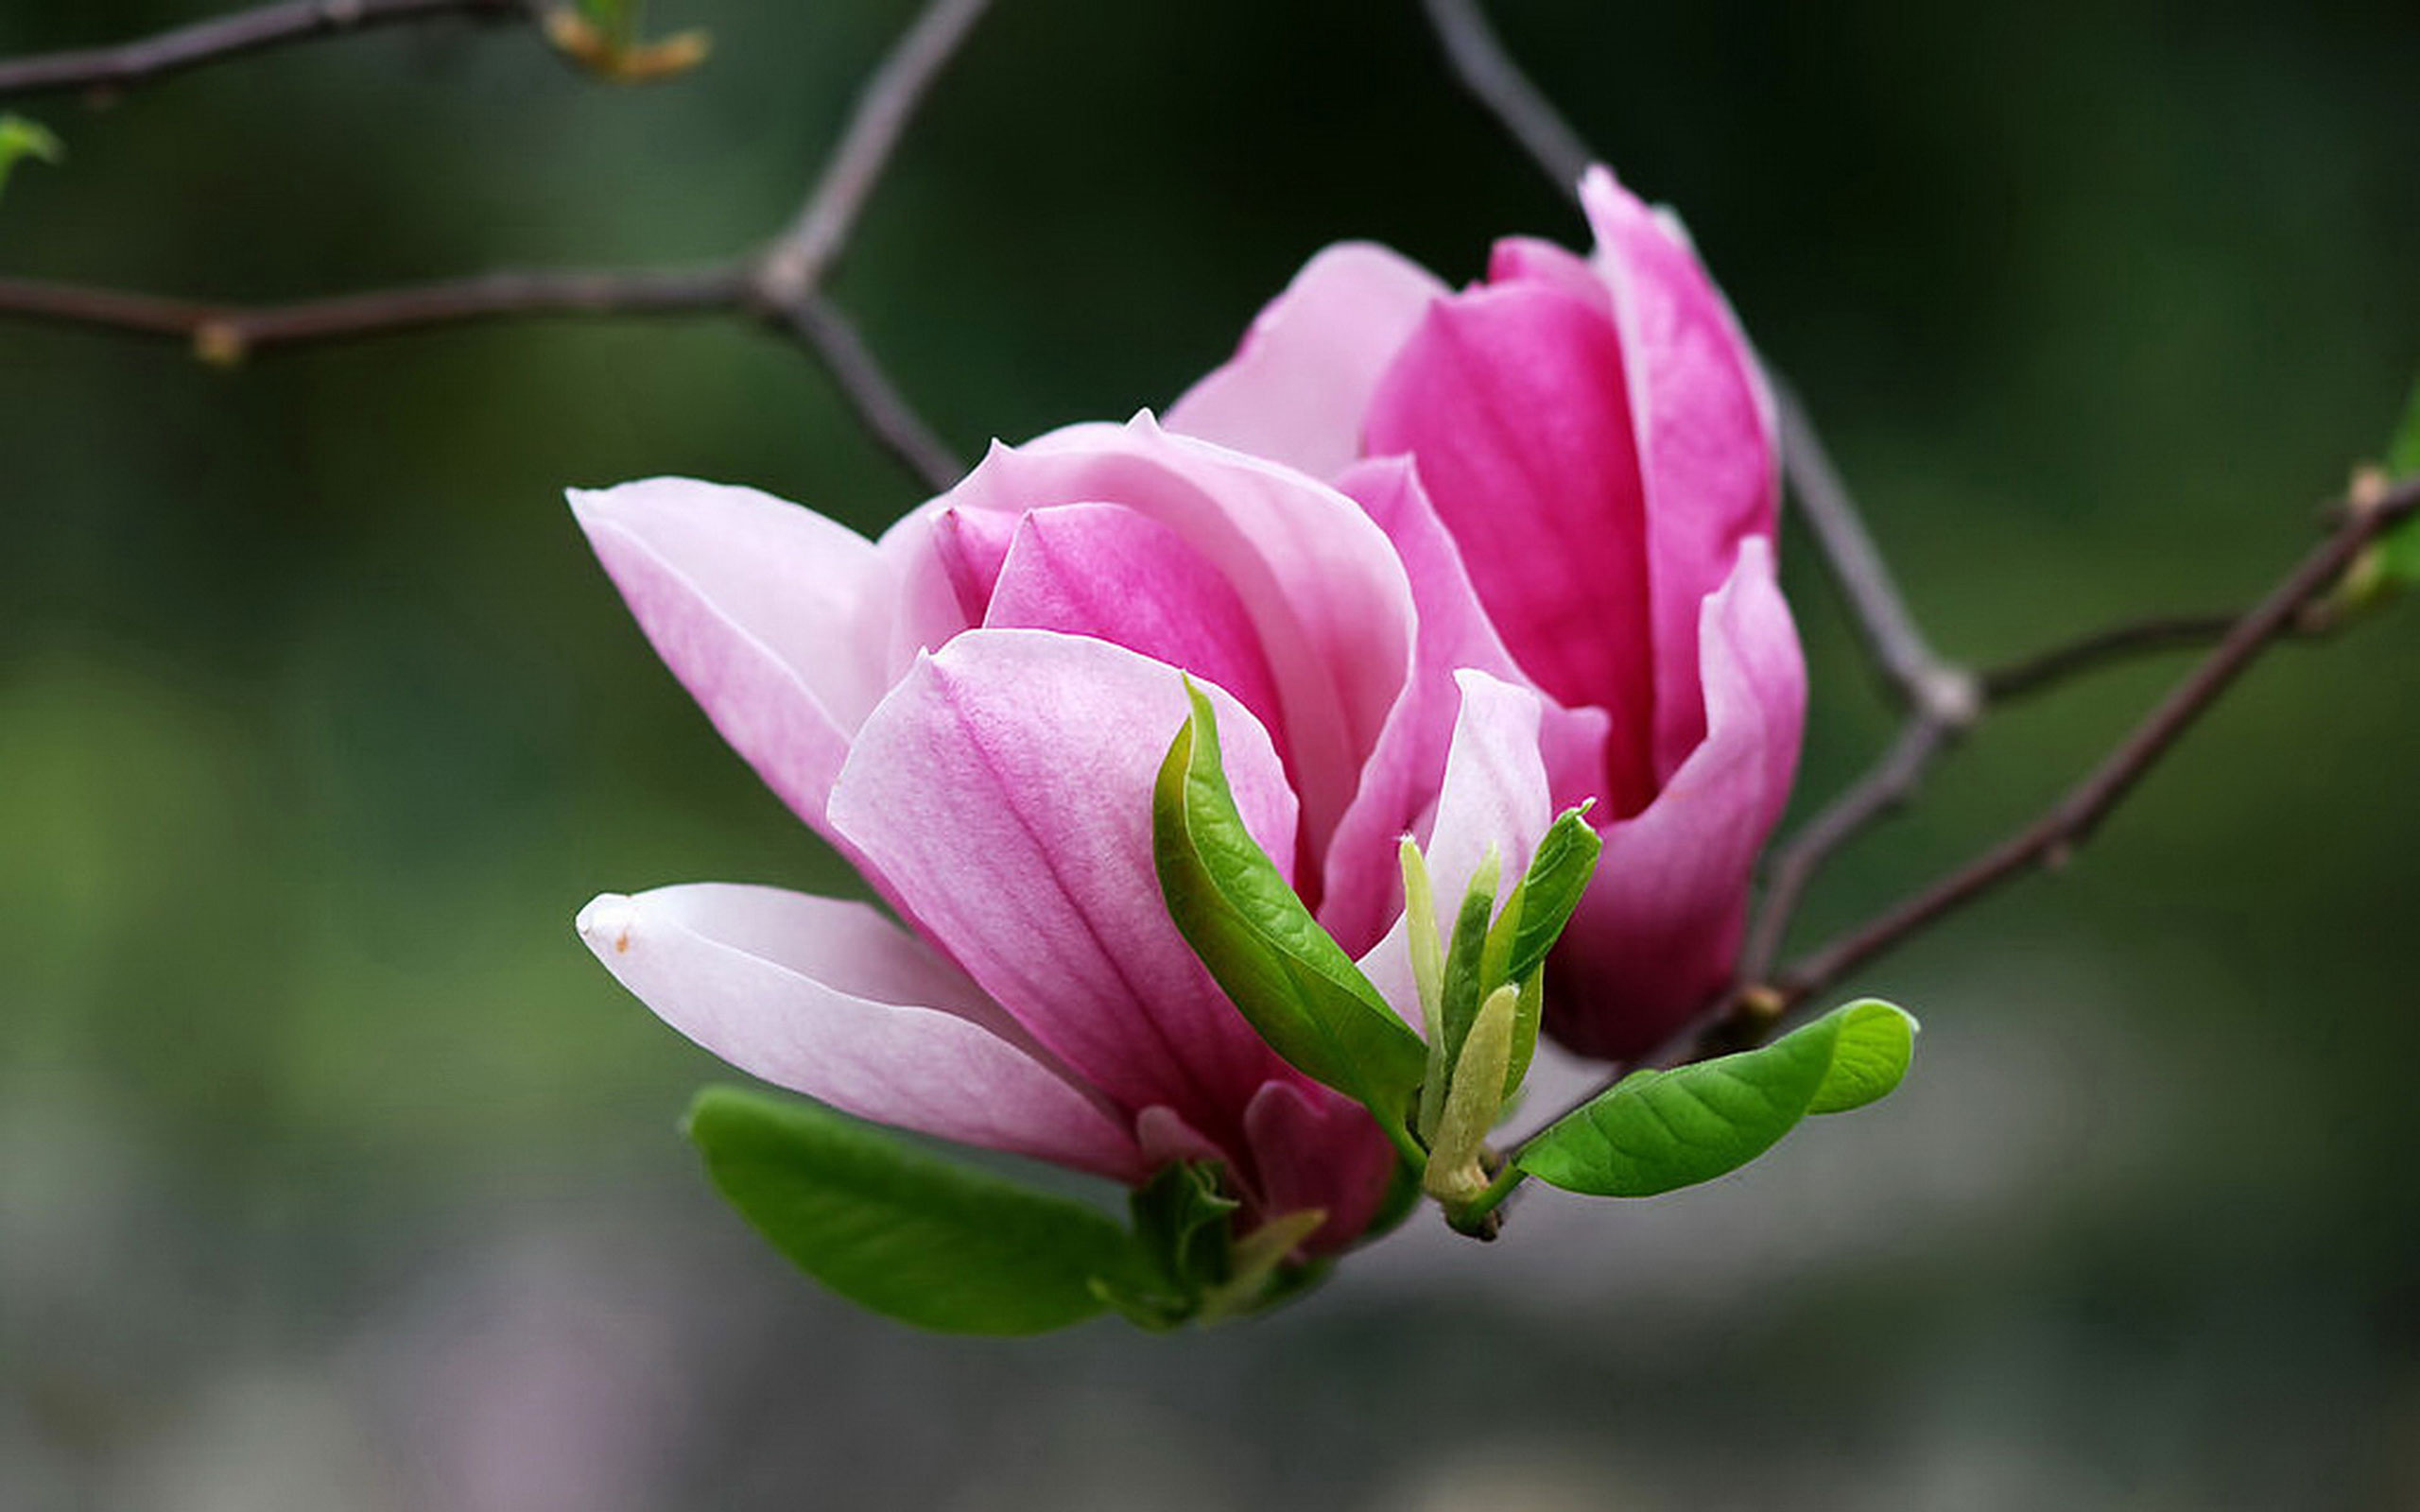 Vibrant magnolias, Delicate petals, Fresh blooms, Natural wonder, 2560x1600 HD Desktop